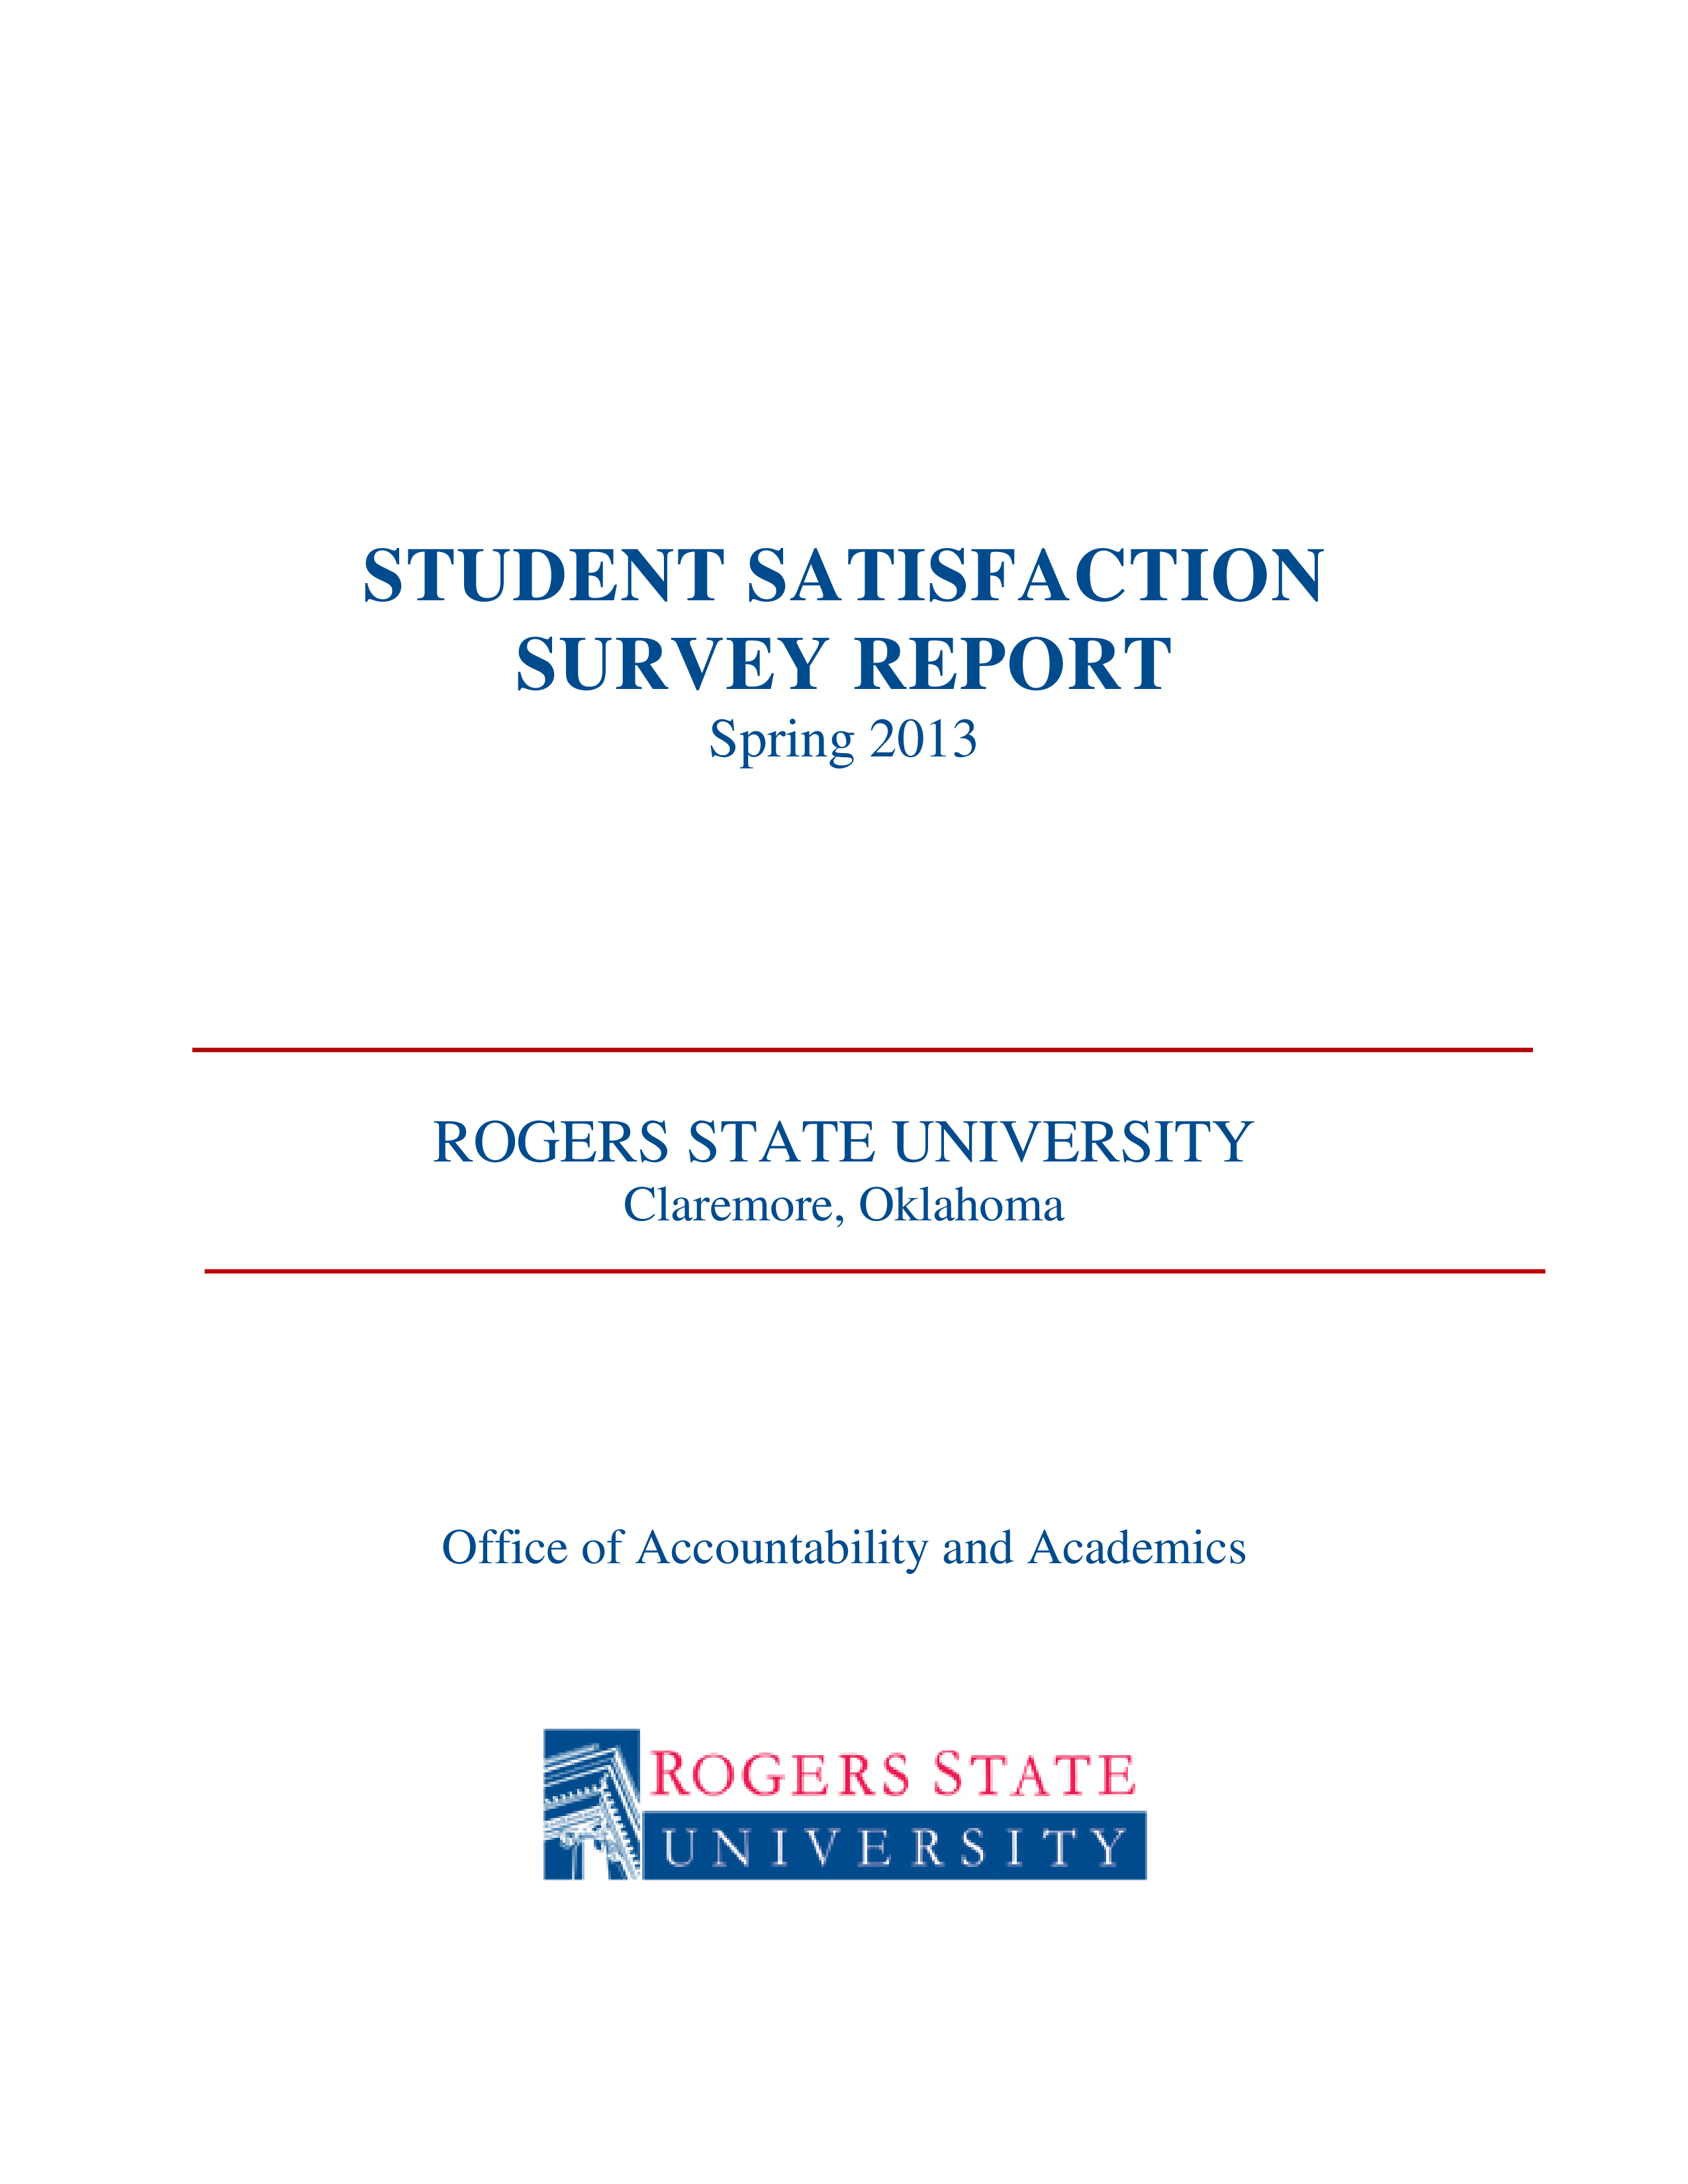 student satisfaction survey report plantilla imagen principal